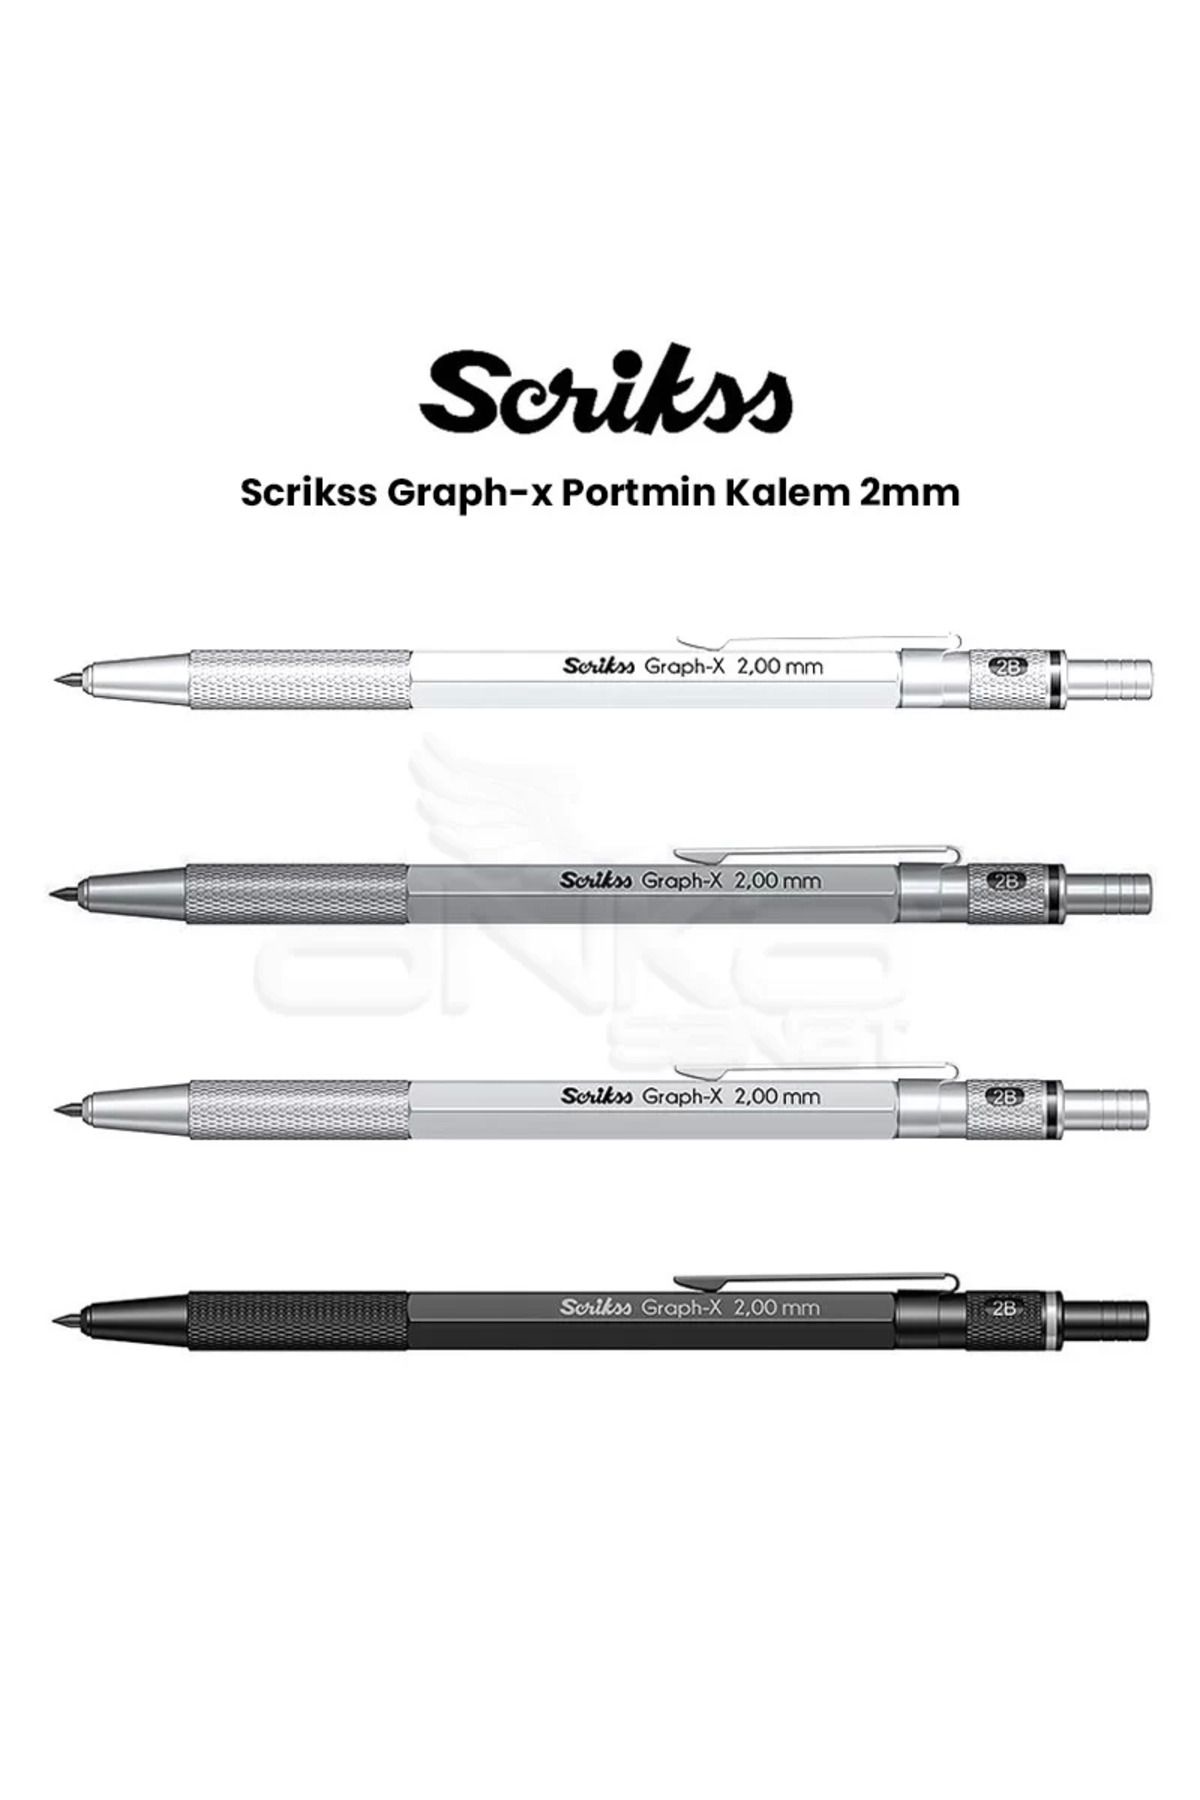 Scrikss Graph-x Portmin Kalem 2mm